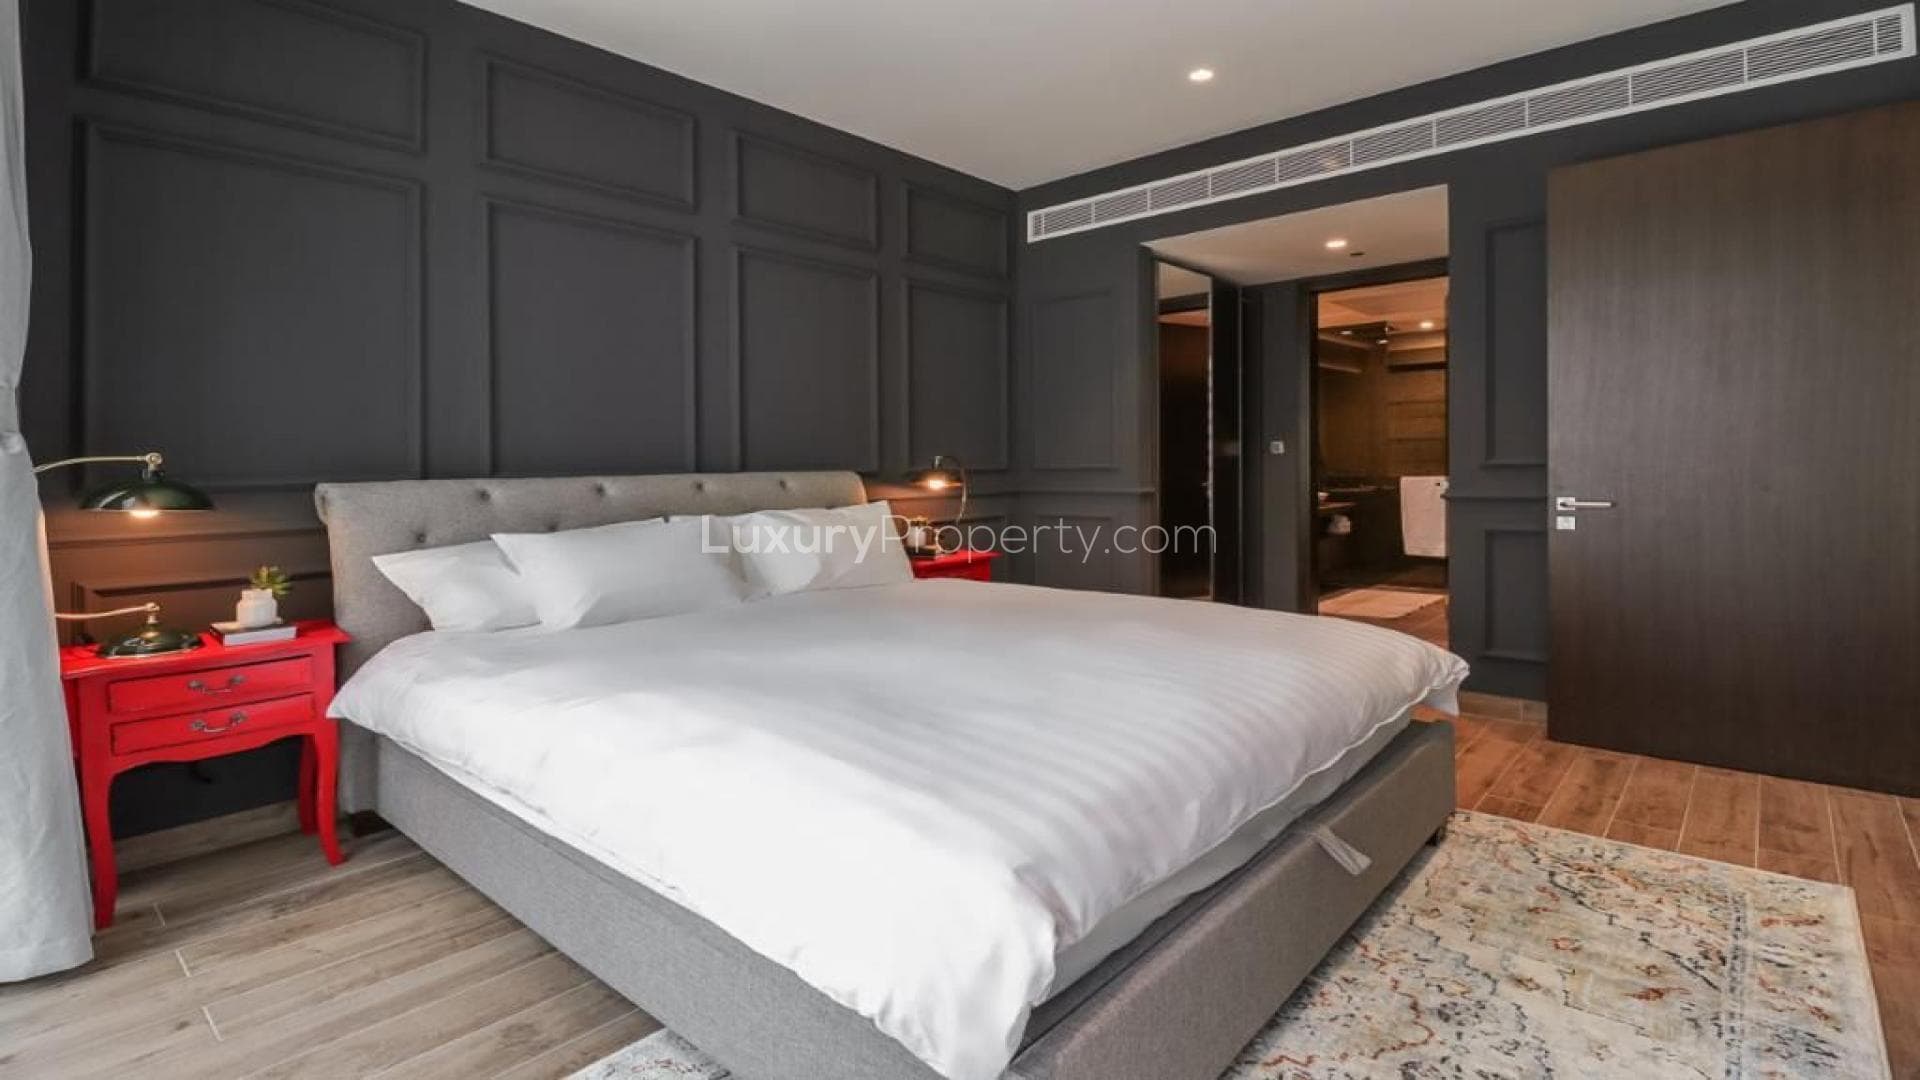 2 Bedroom Apartment For Rent Signature Villas Frond D Lp35522 1a8ba4807cabd200.jpg